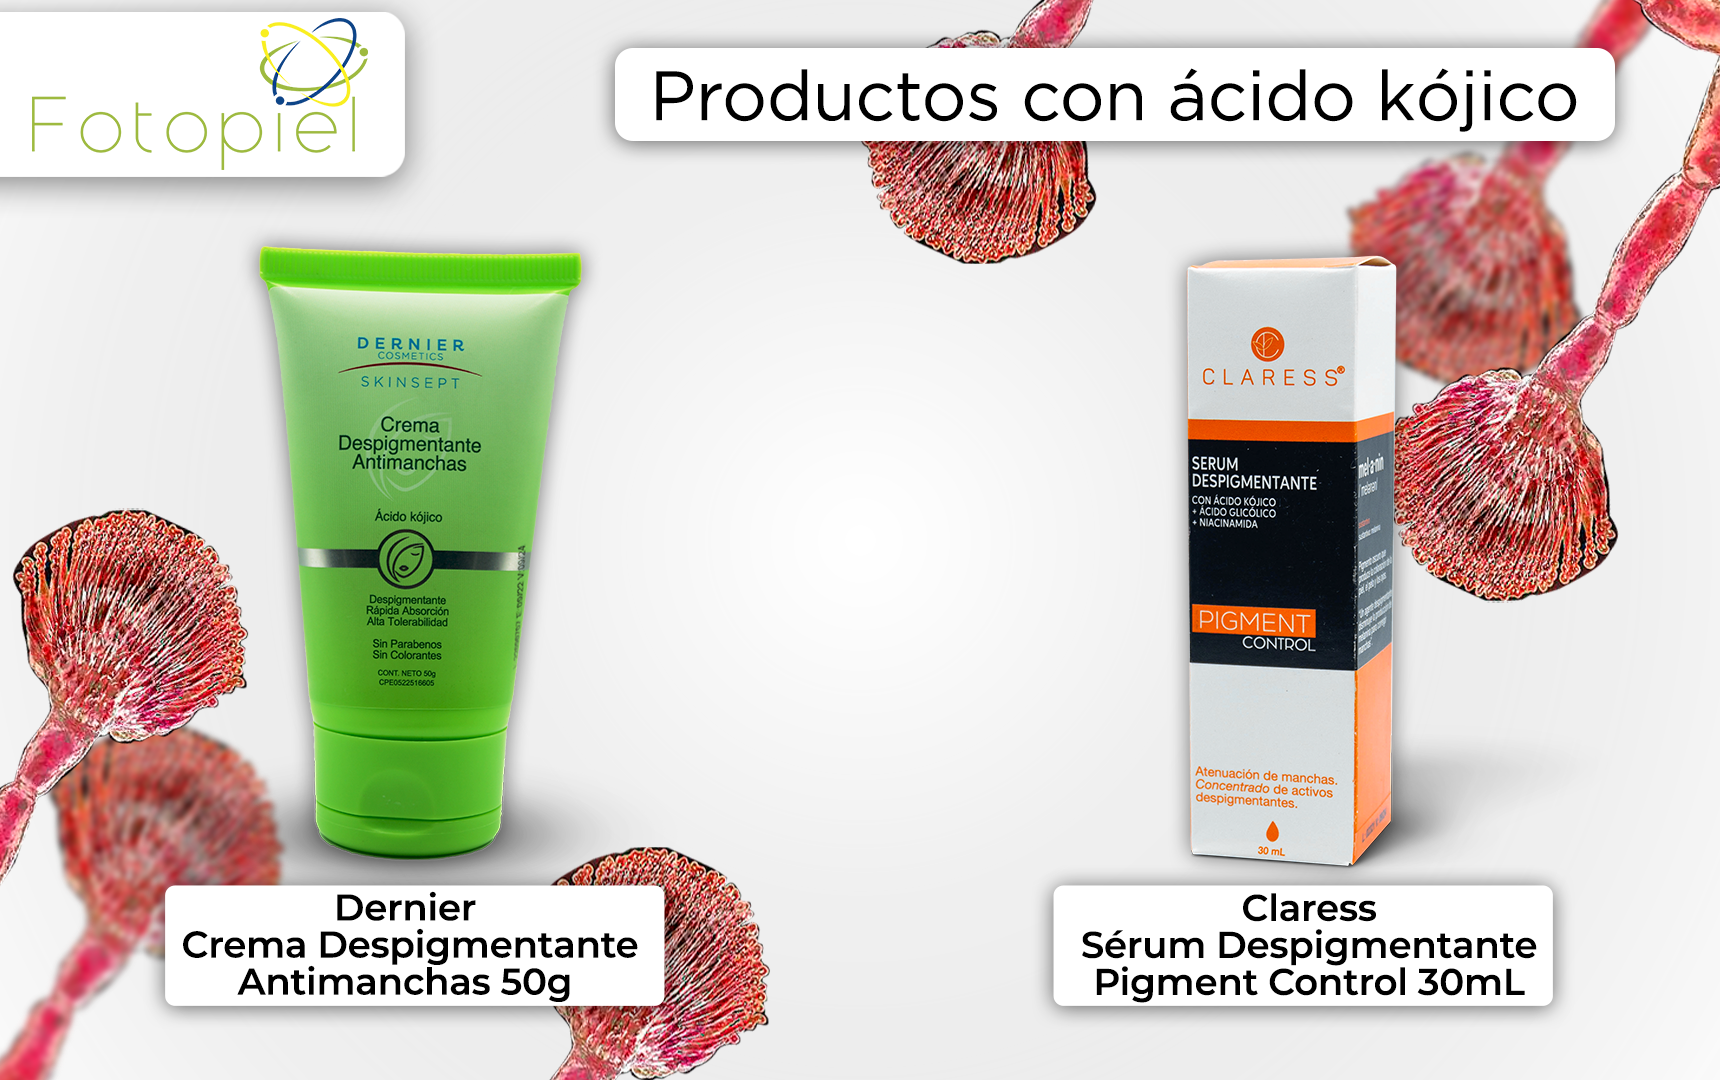 Productos con ácido kójico; «Dernier crema despigmentante antimanchas - 50g» y «Claress sérum despigmentante pigment control - 30mL»